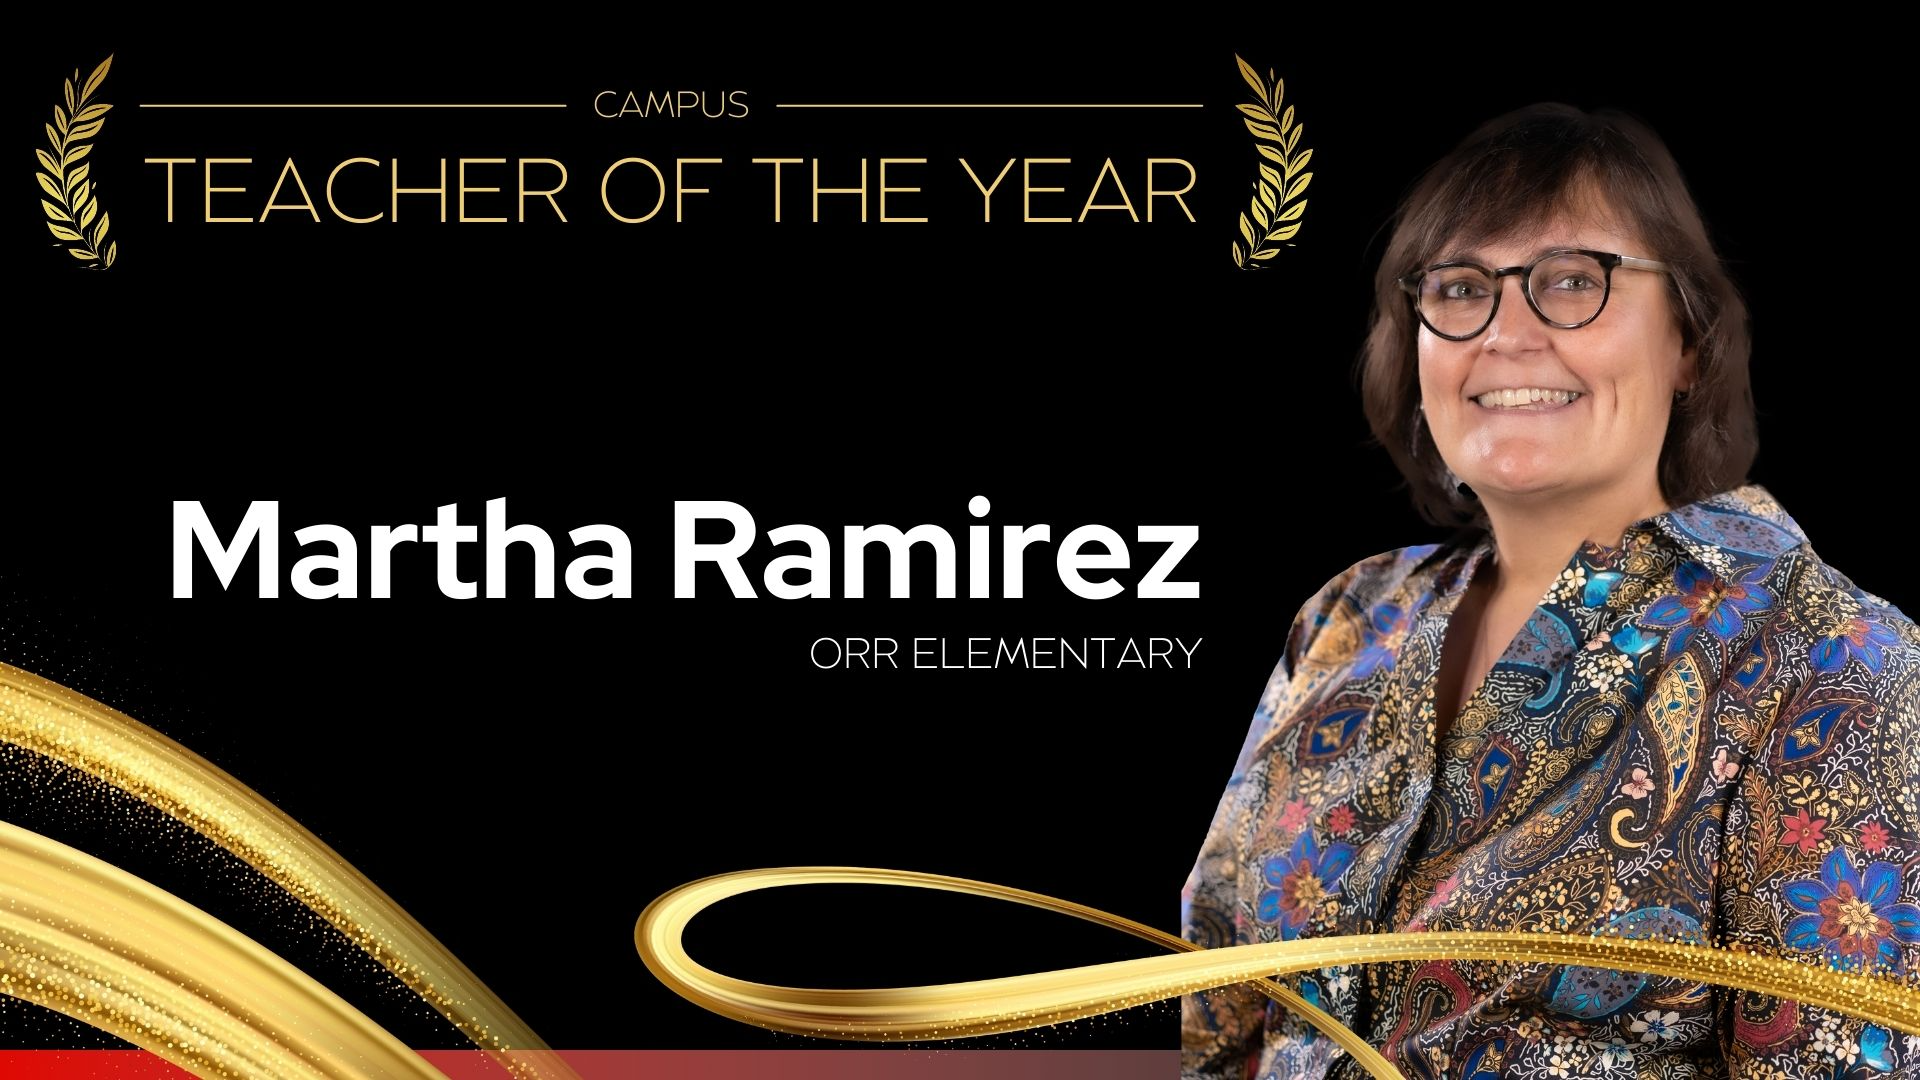 Campus Teacher of the year A. W. Orr Elementary School - Martha Ramirez